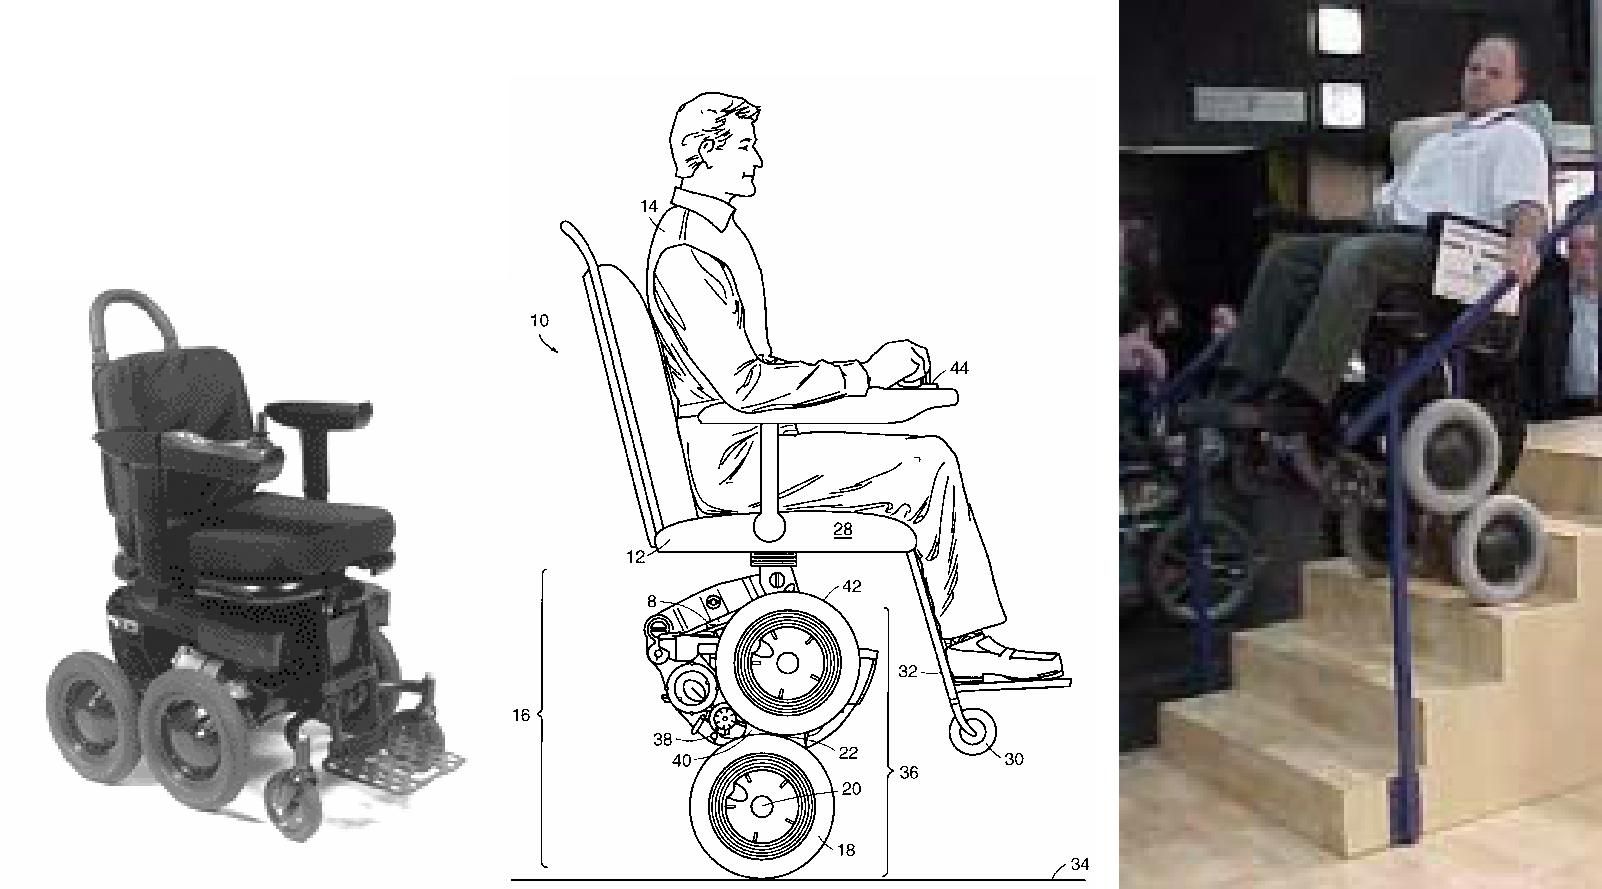 Шагающее кресло. Инвалидная коляска ступенькоход. Боковина от инвалидной коляски 401. Ступенькоход с интегрированным сиденьем Escalino g1201. Электроколяска для инвалидов 200 кг.